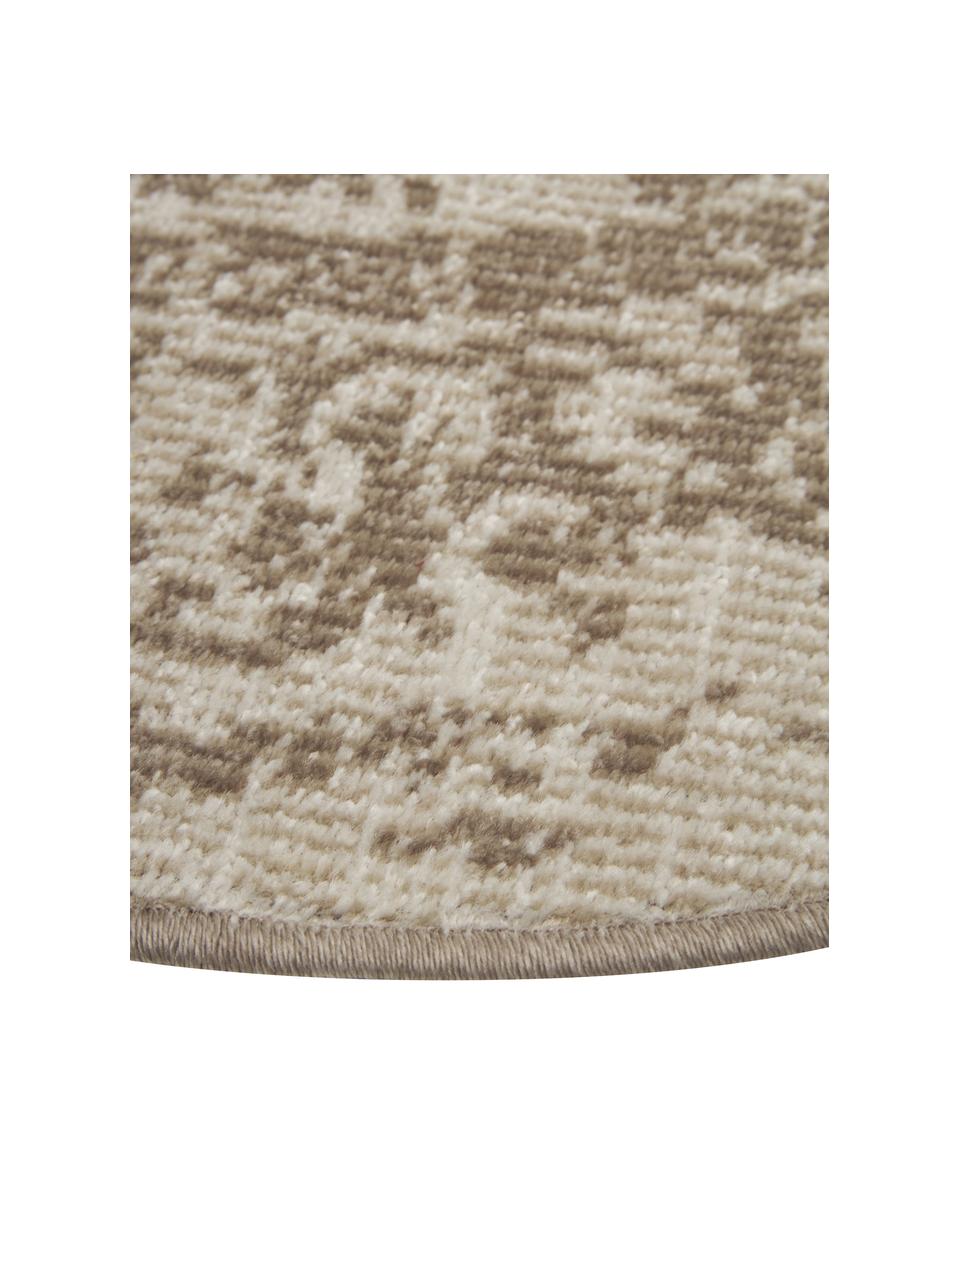 Runder In- & Outdoor-Teppich Zadie im Vintage Style in Beige, 100% Polypropylen, Beige, Ø 120 cm (Grösse S)